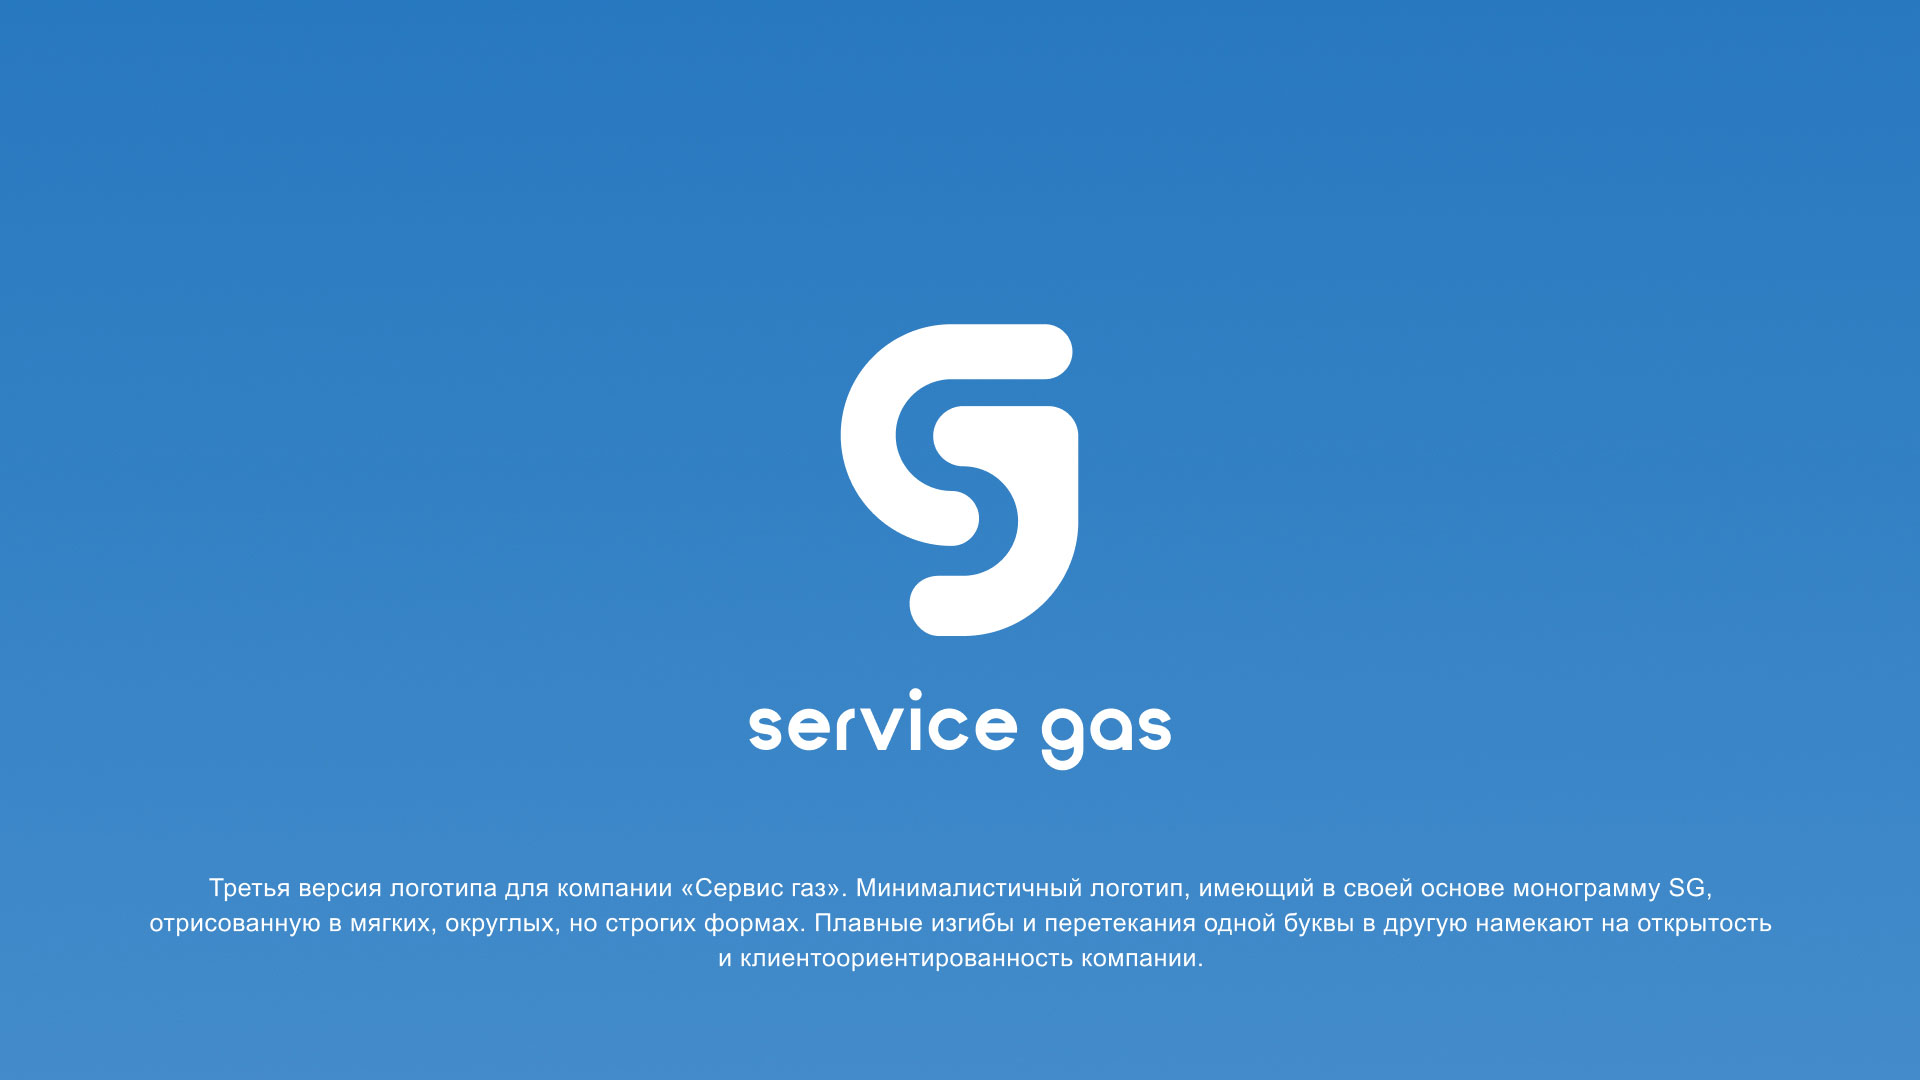 Разработка логотипа газовой компании «Сервис газ» в 